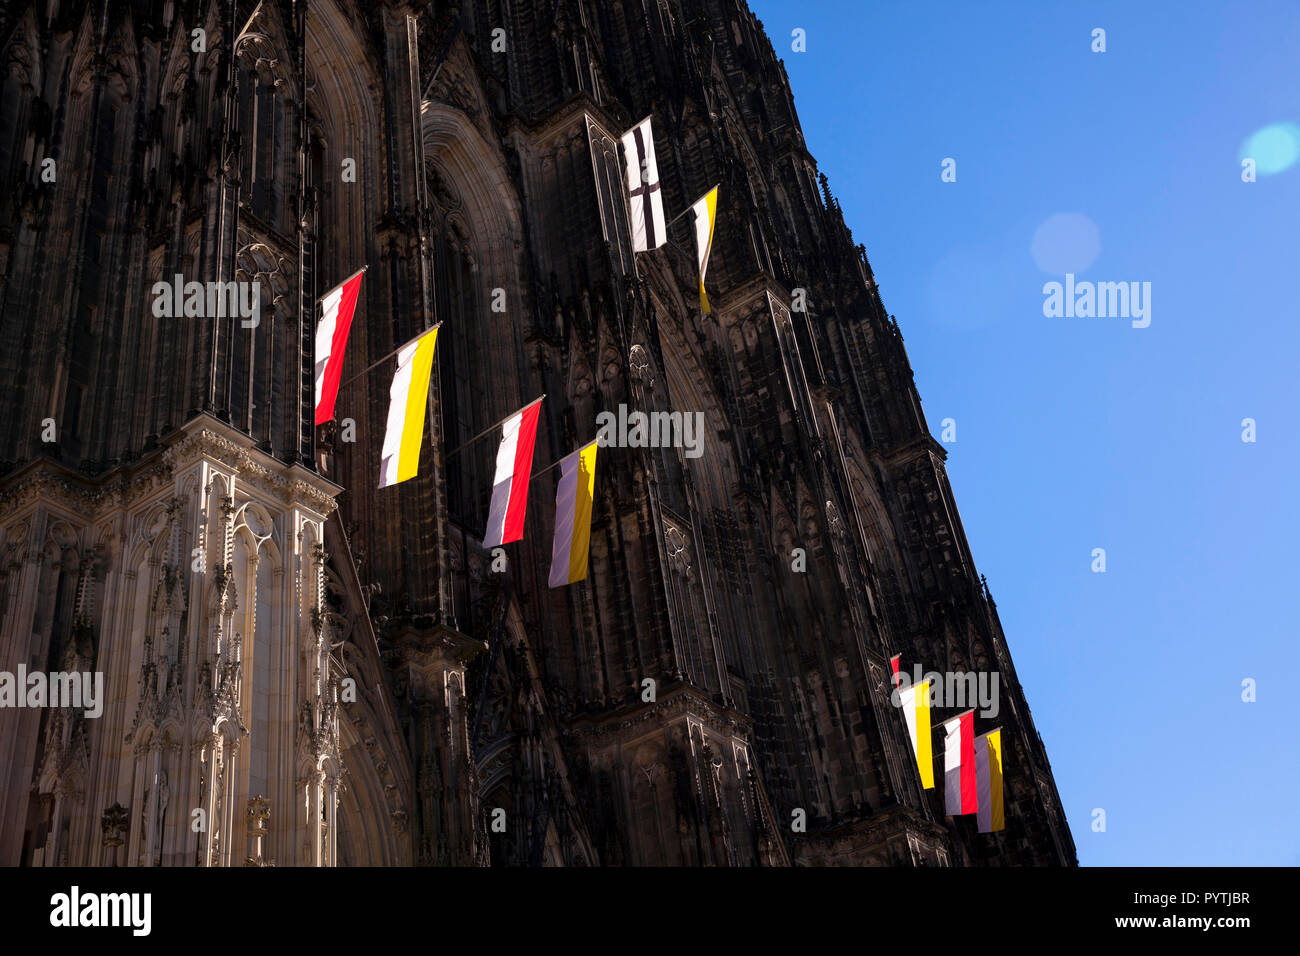 Banderas en la fachada occidental de la catedral de Colonia, Alemania. An der Westfassade Falggen des Doms, Koeln, Deutschland. Foto de stock